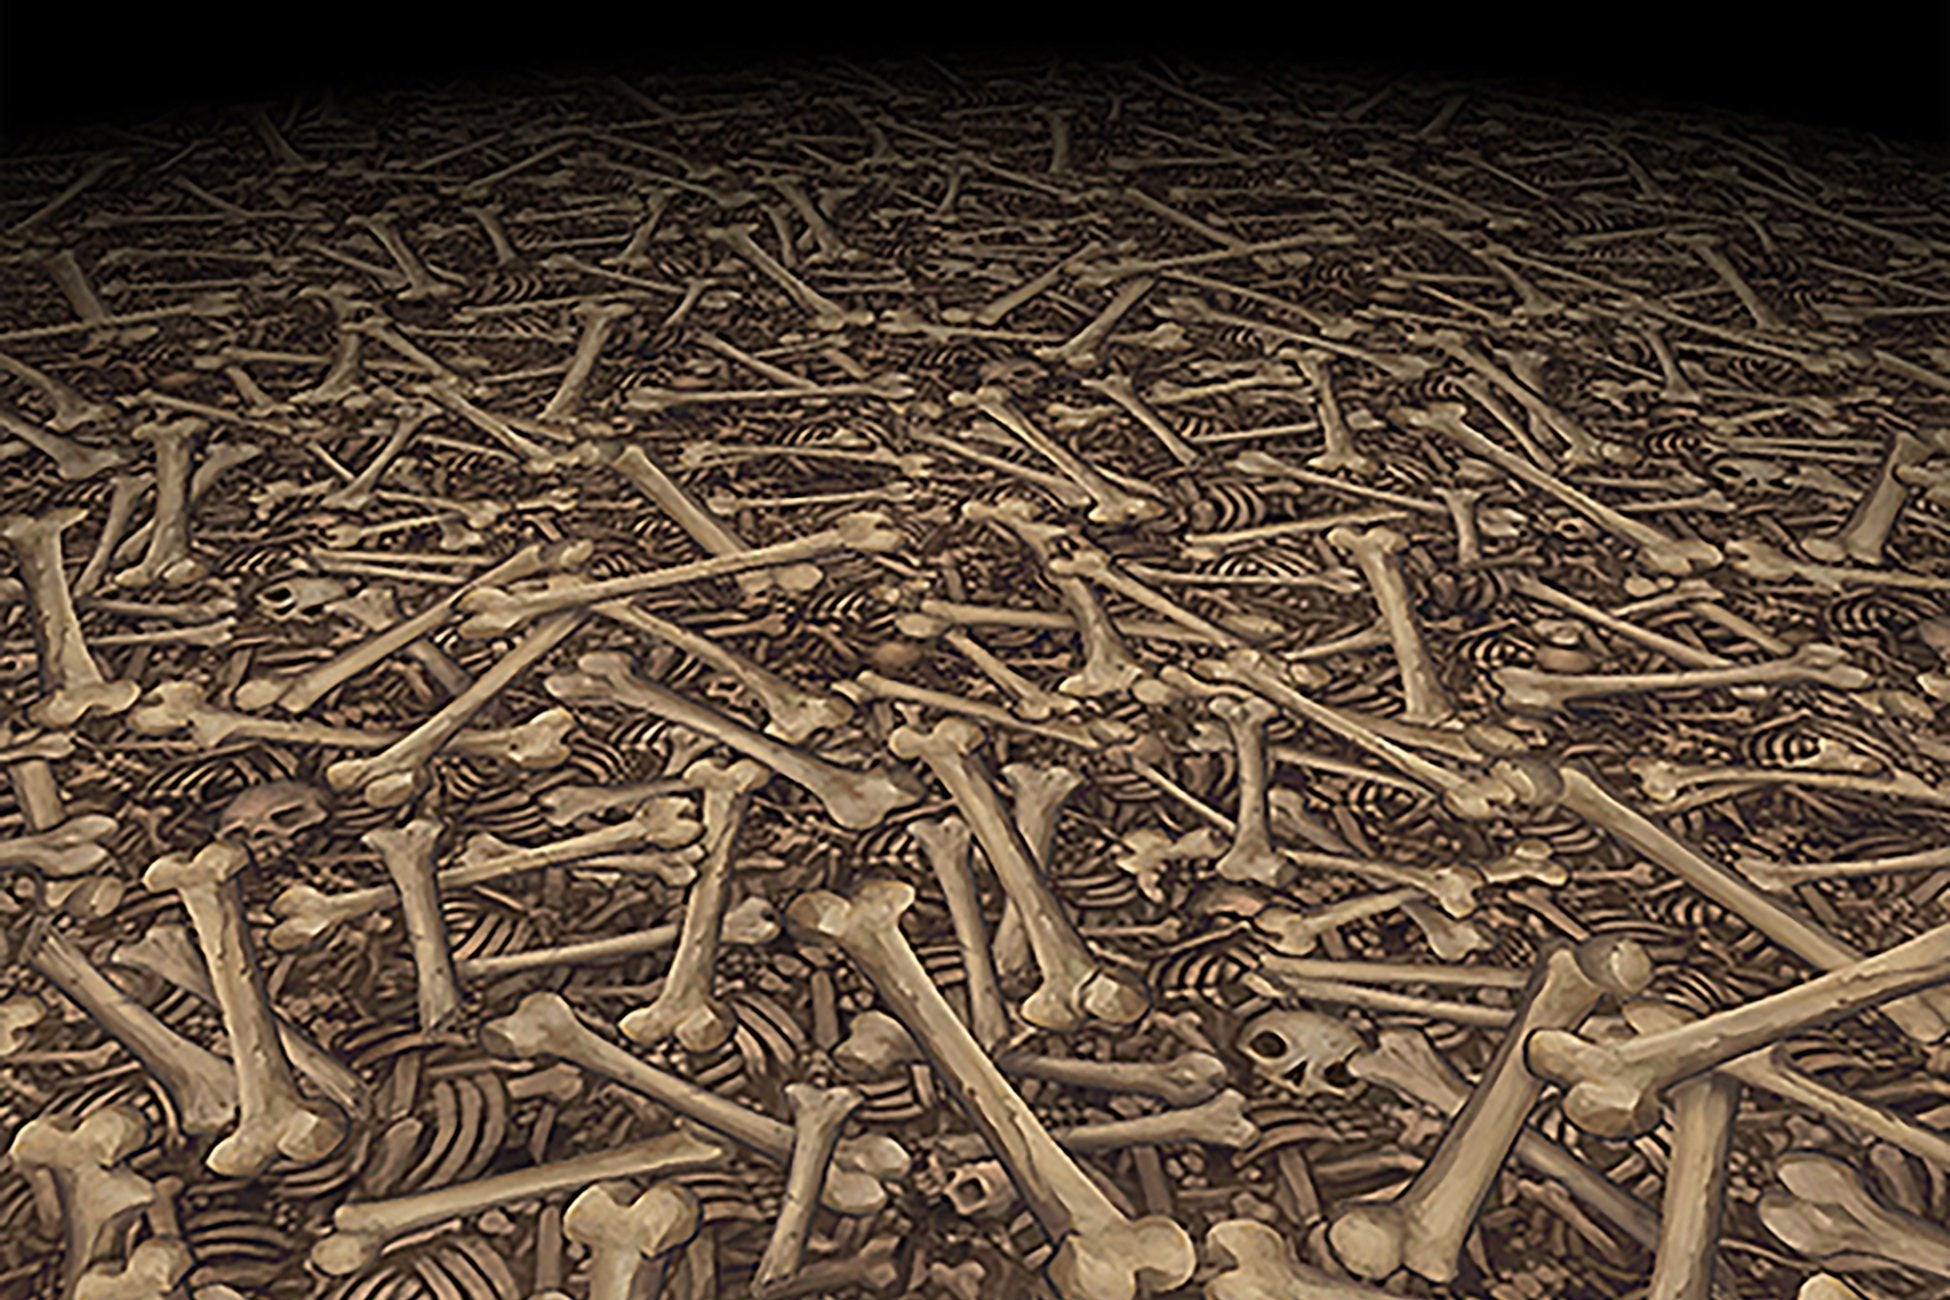 8001 Wood Panel Rectangle - Skulls, Pile 2 – HumanTreeRobot